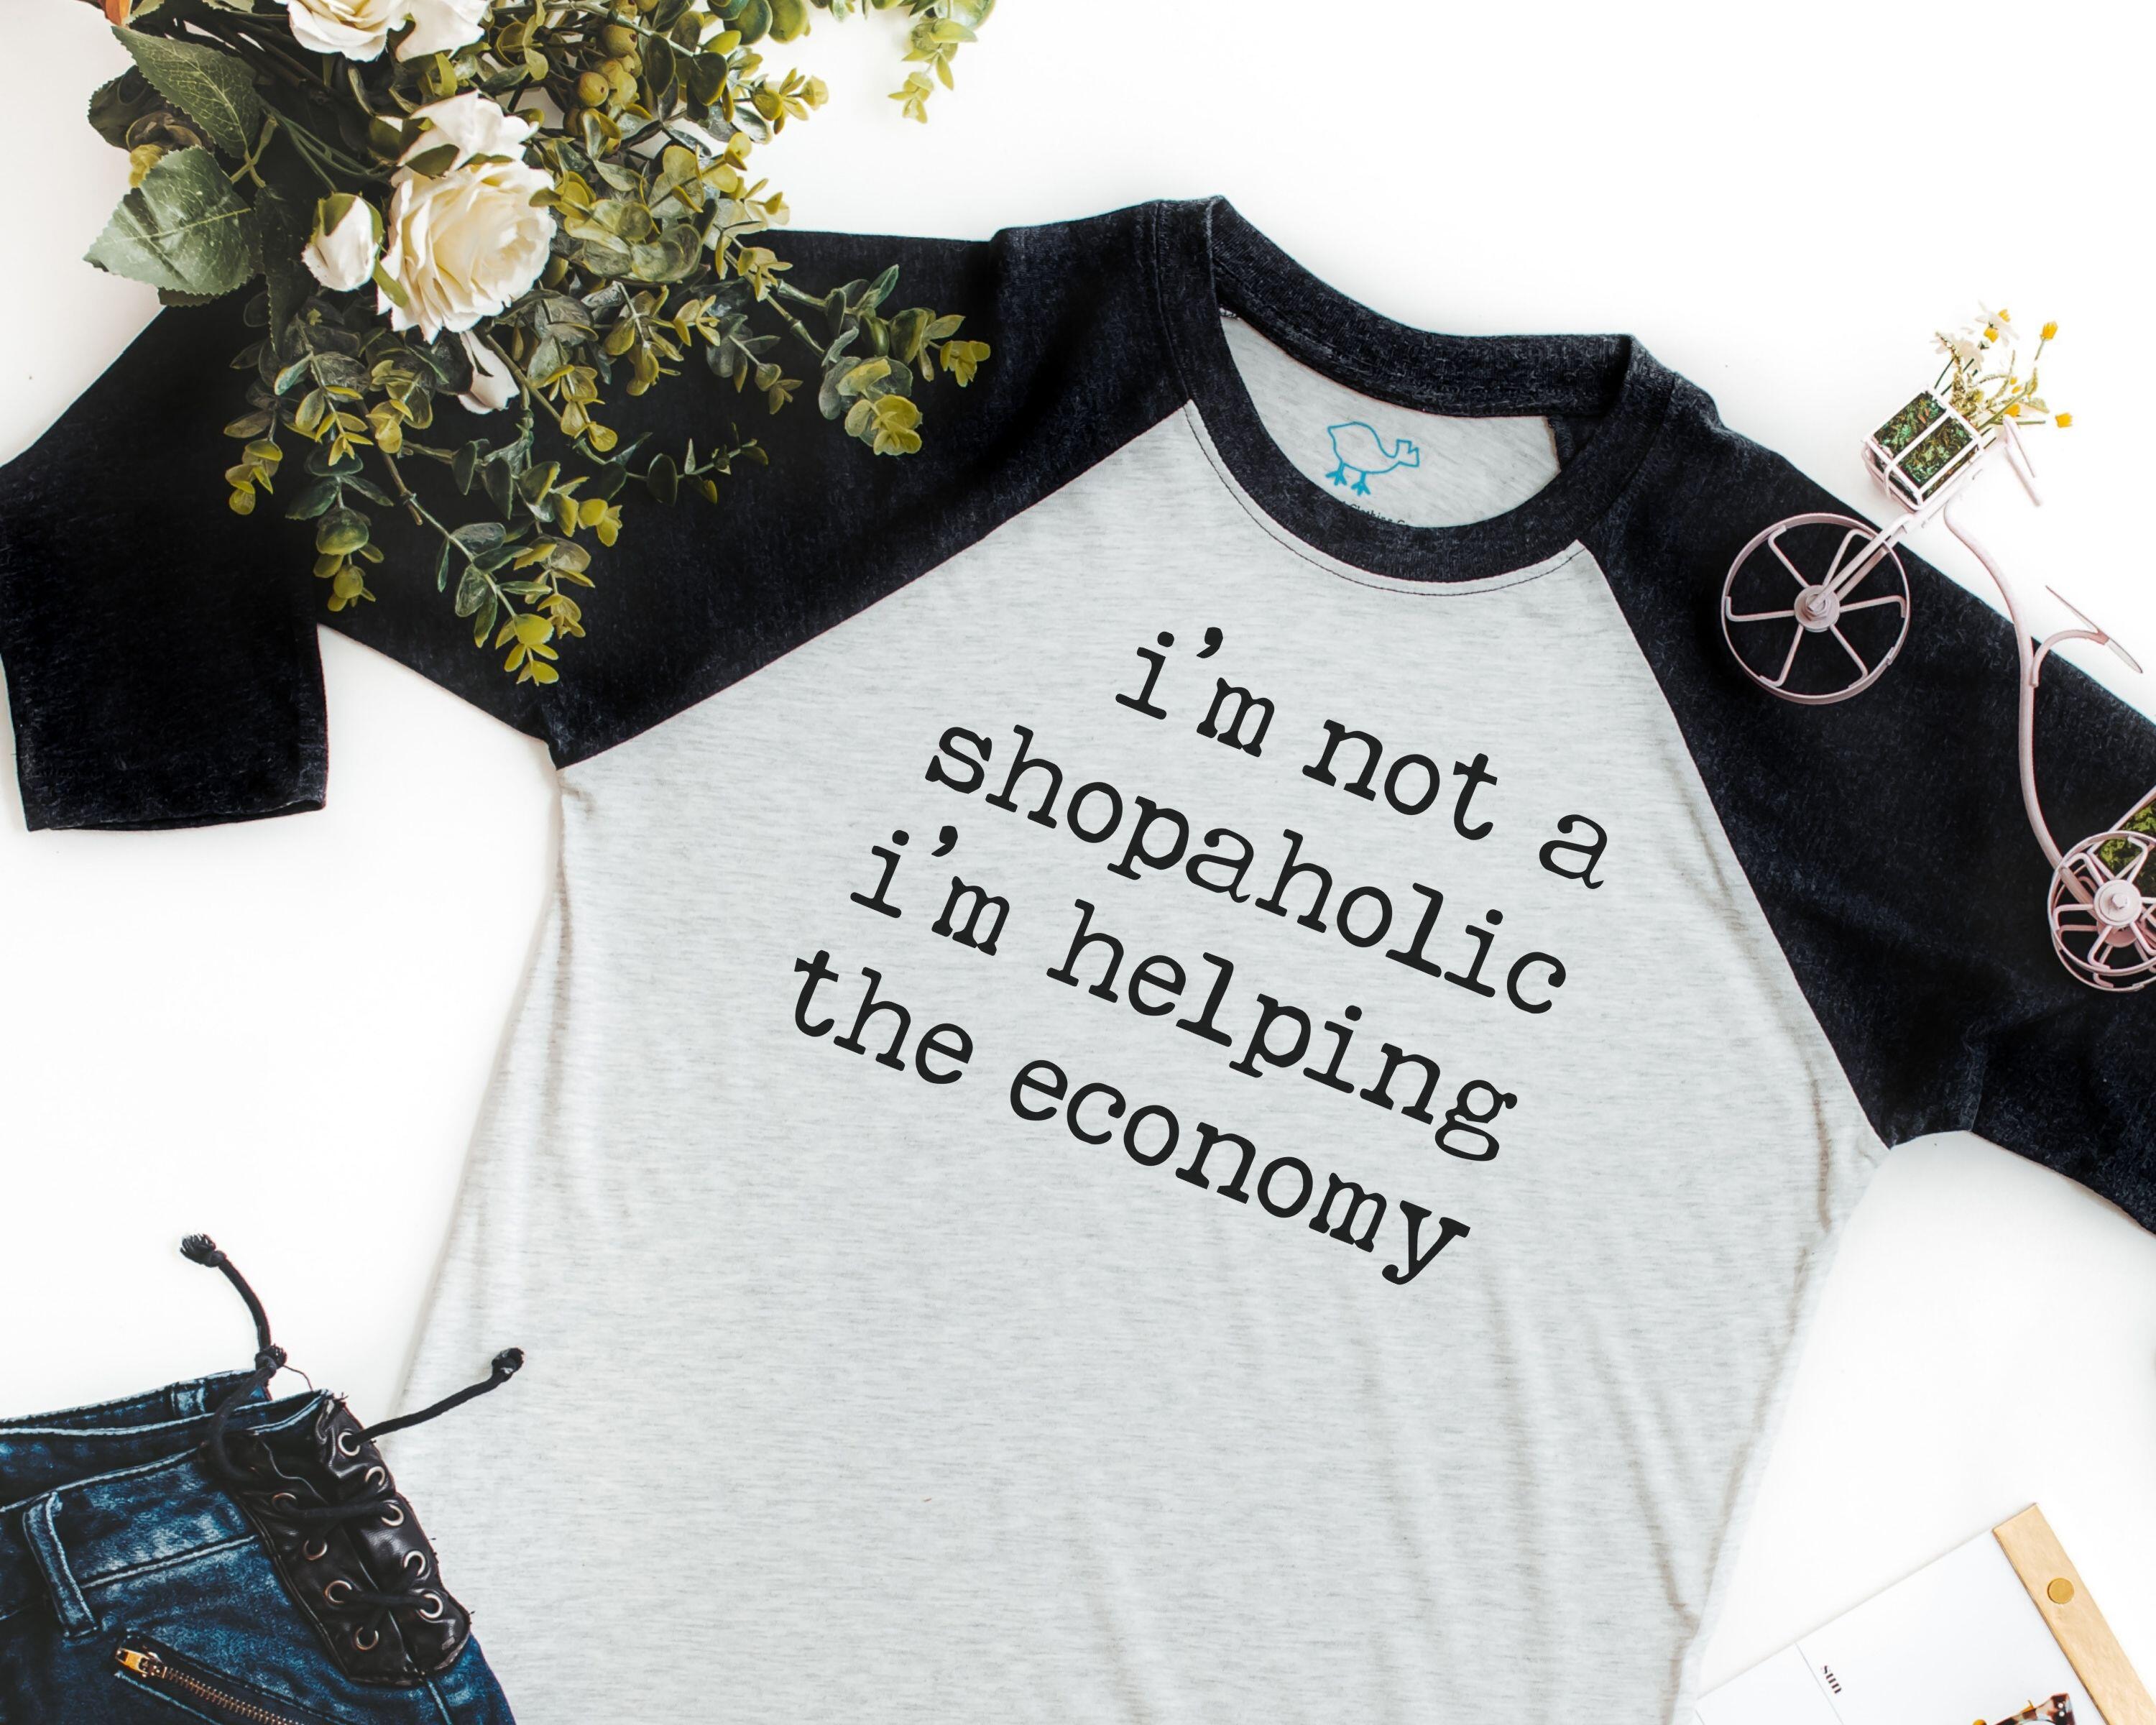 i'm not shopaholic i'm helping the economy shirt